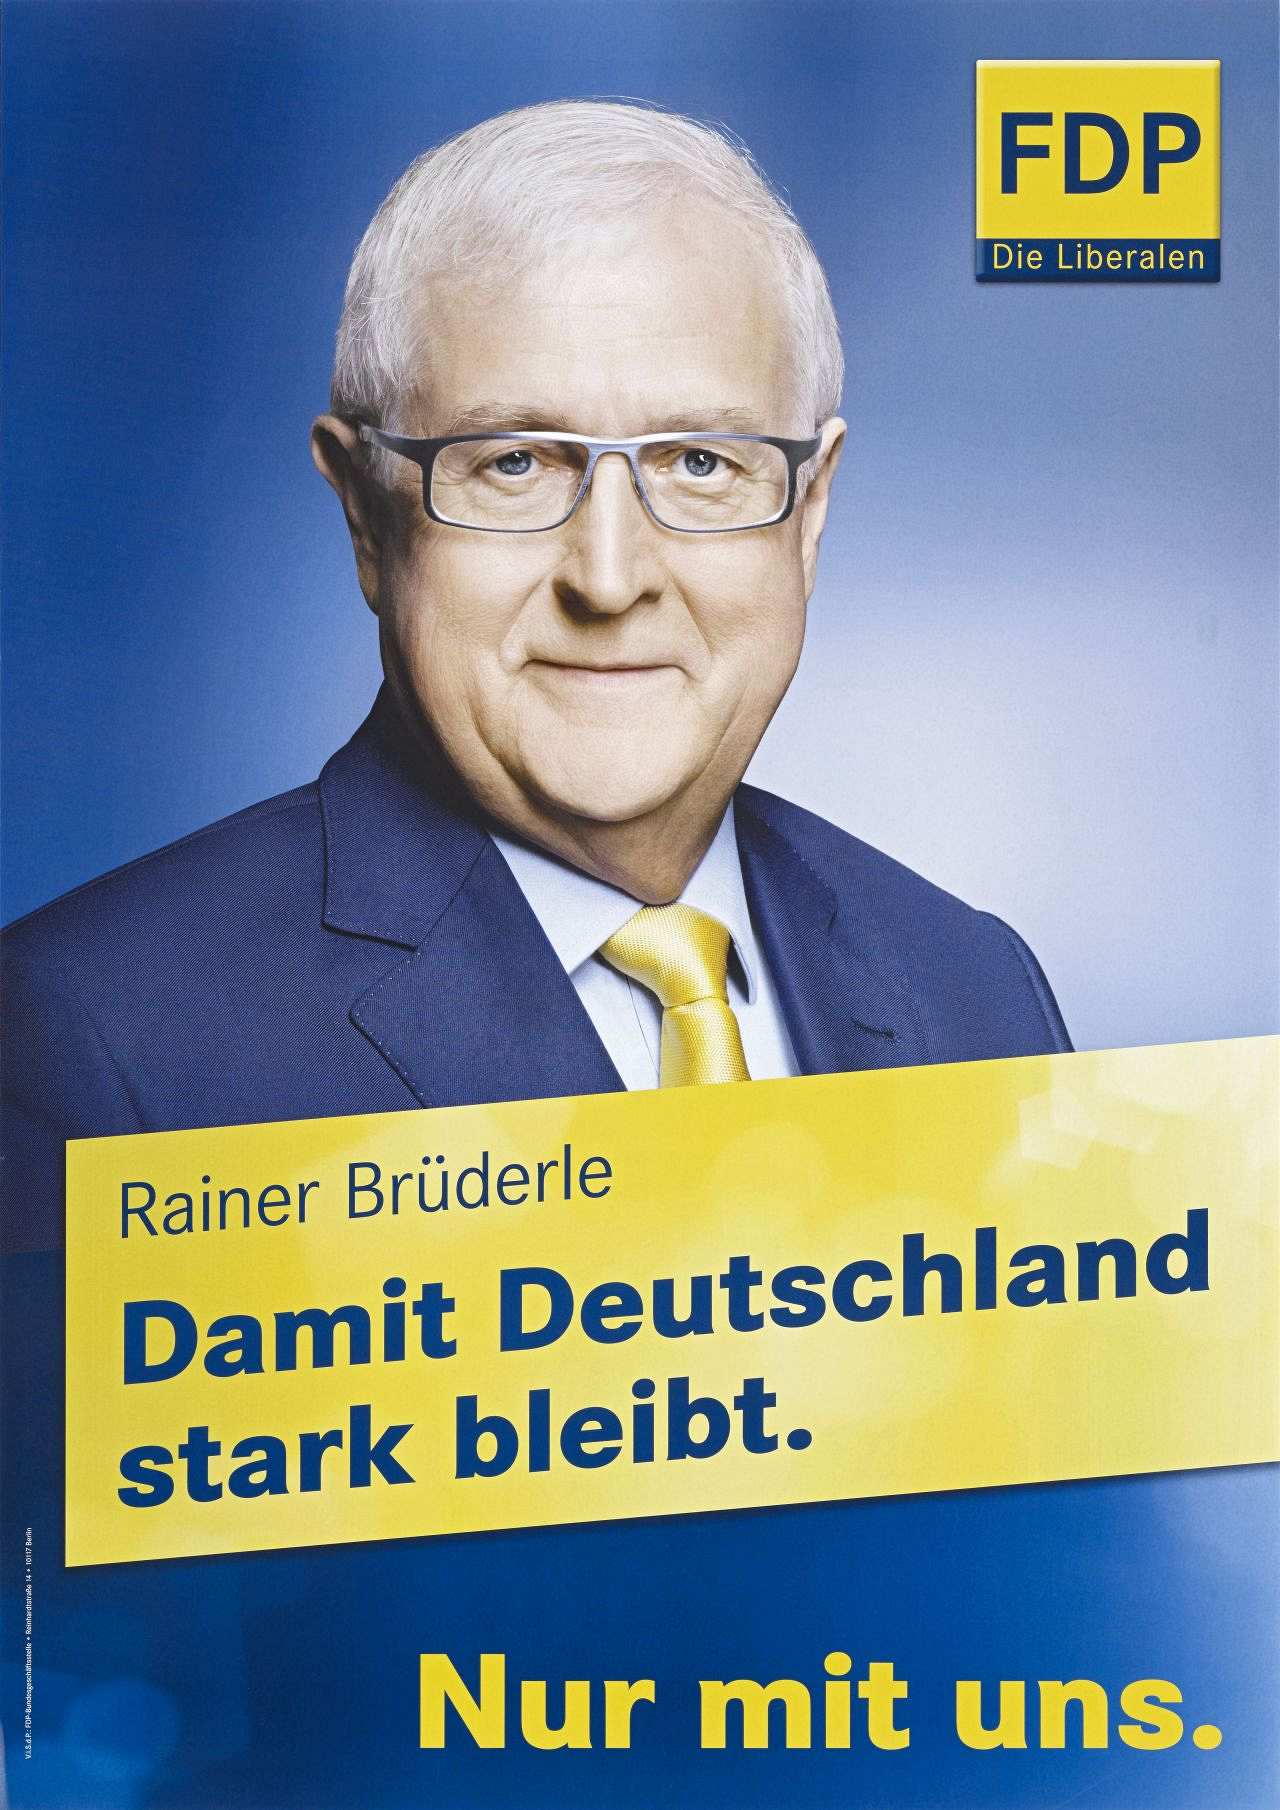 Bläuliche Grundierung. Oben rechts: Parteilogo. Hauptmotiv: Farbfotografie des FDP-Spitzenkandidaten. Darunter gelb-ausgefülltes Rechteck. Unten rechts gelb: Nur mit uns. Unten links klein: Hinweis auf V.i.S.d.P.